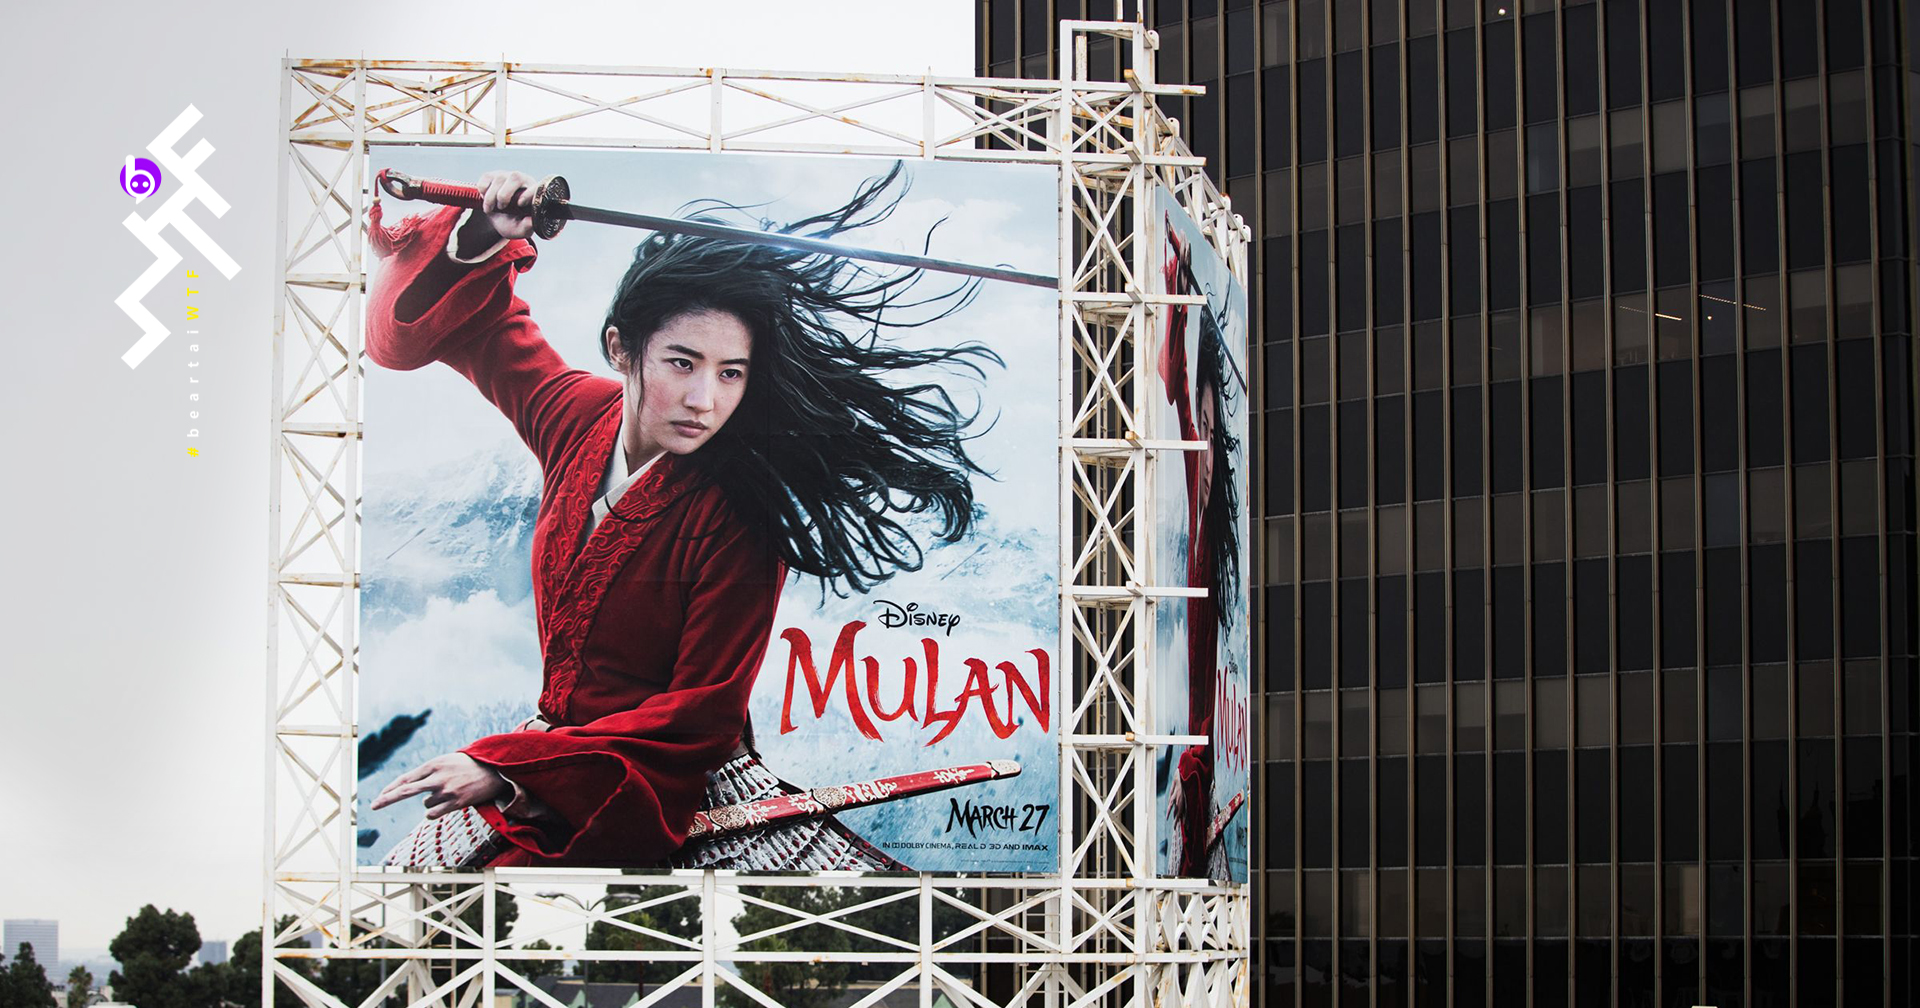 เจ้าของโรงหนังชาวจีนหัวร้อน : Mulan ไม่เข้าฉาย ก็ทุบป้ายทิ้งซะเลย